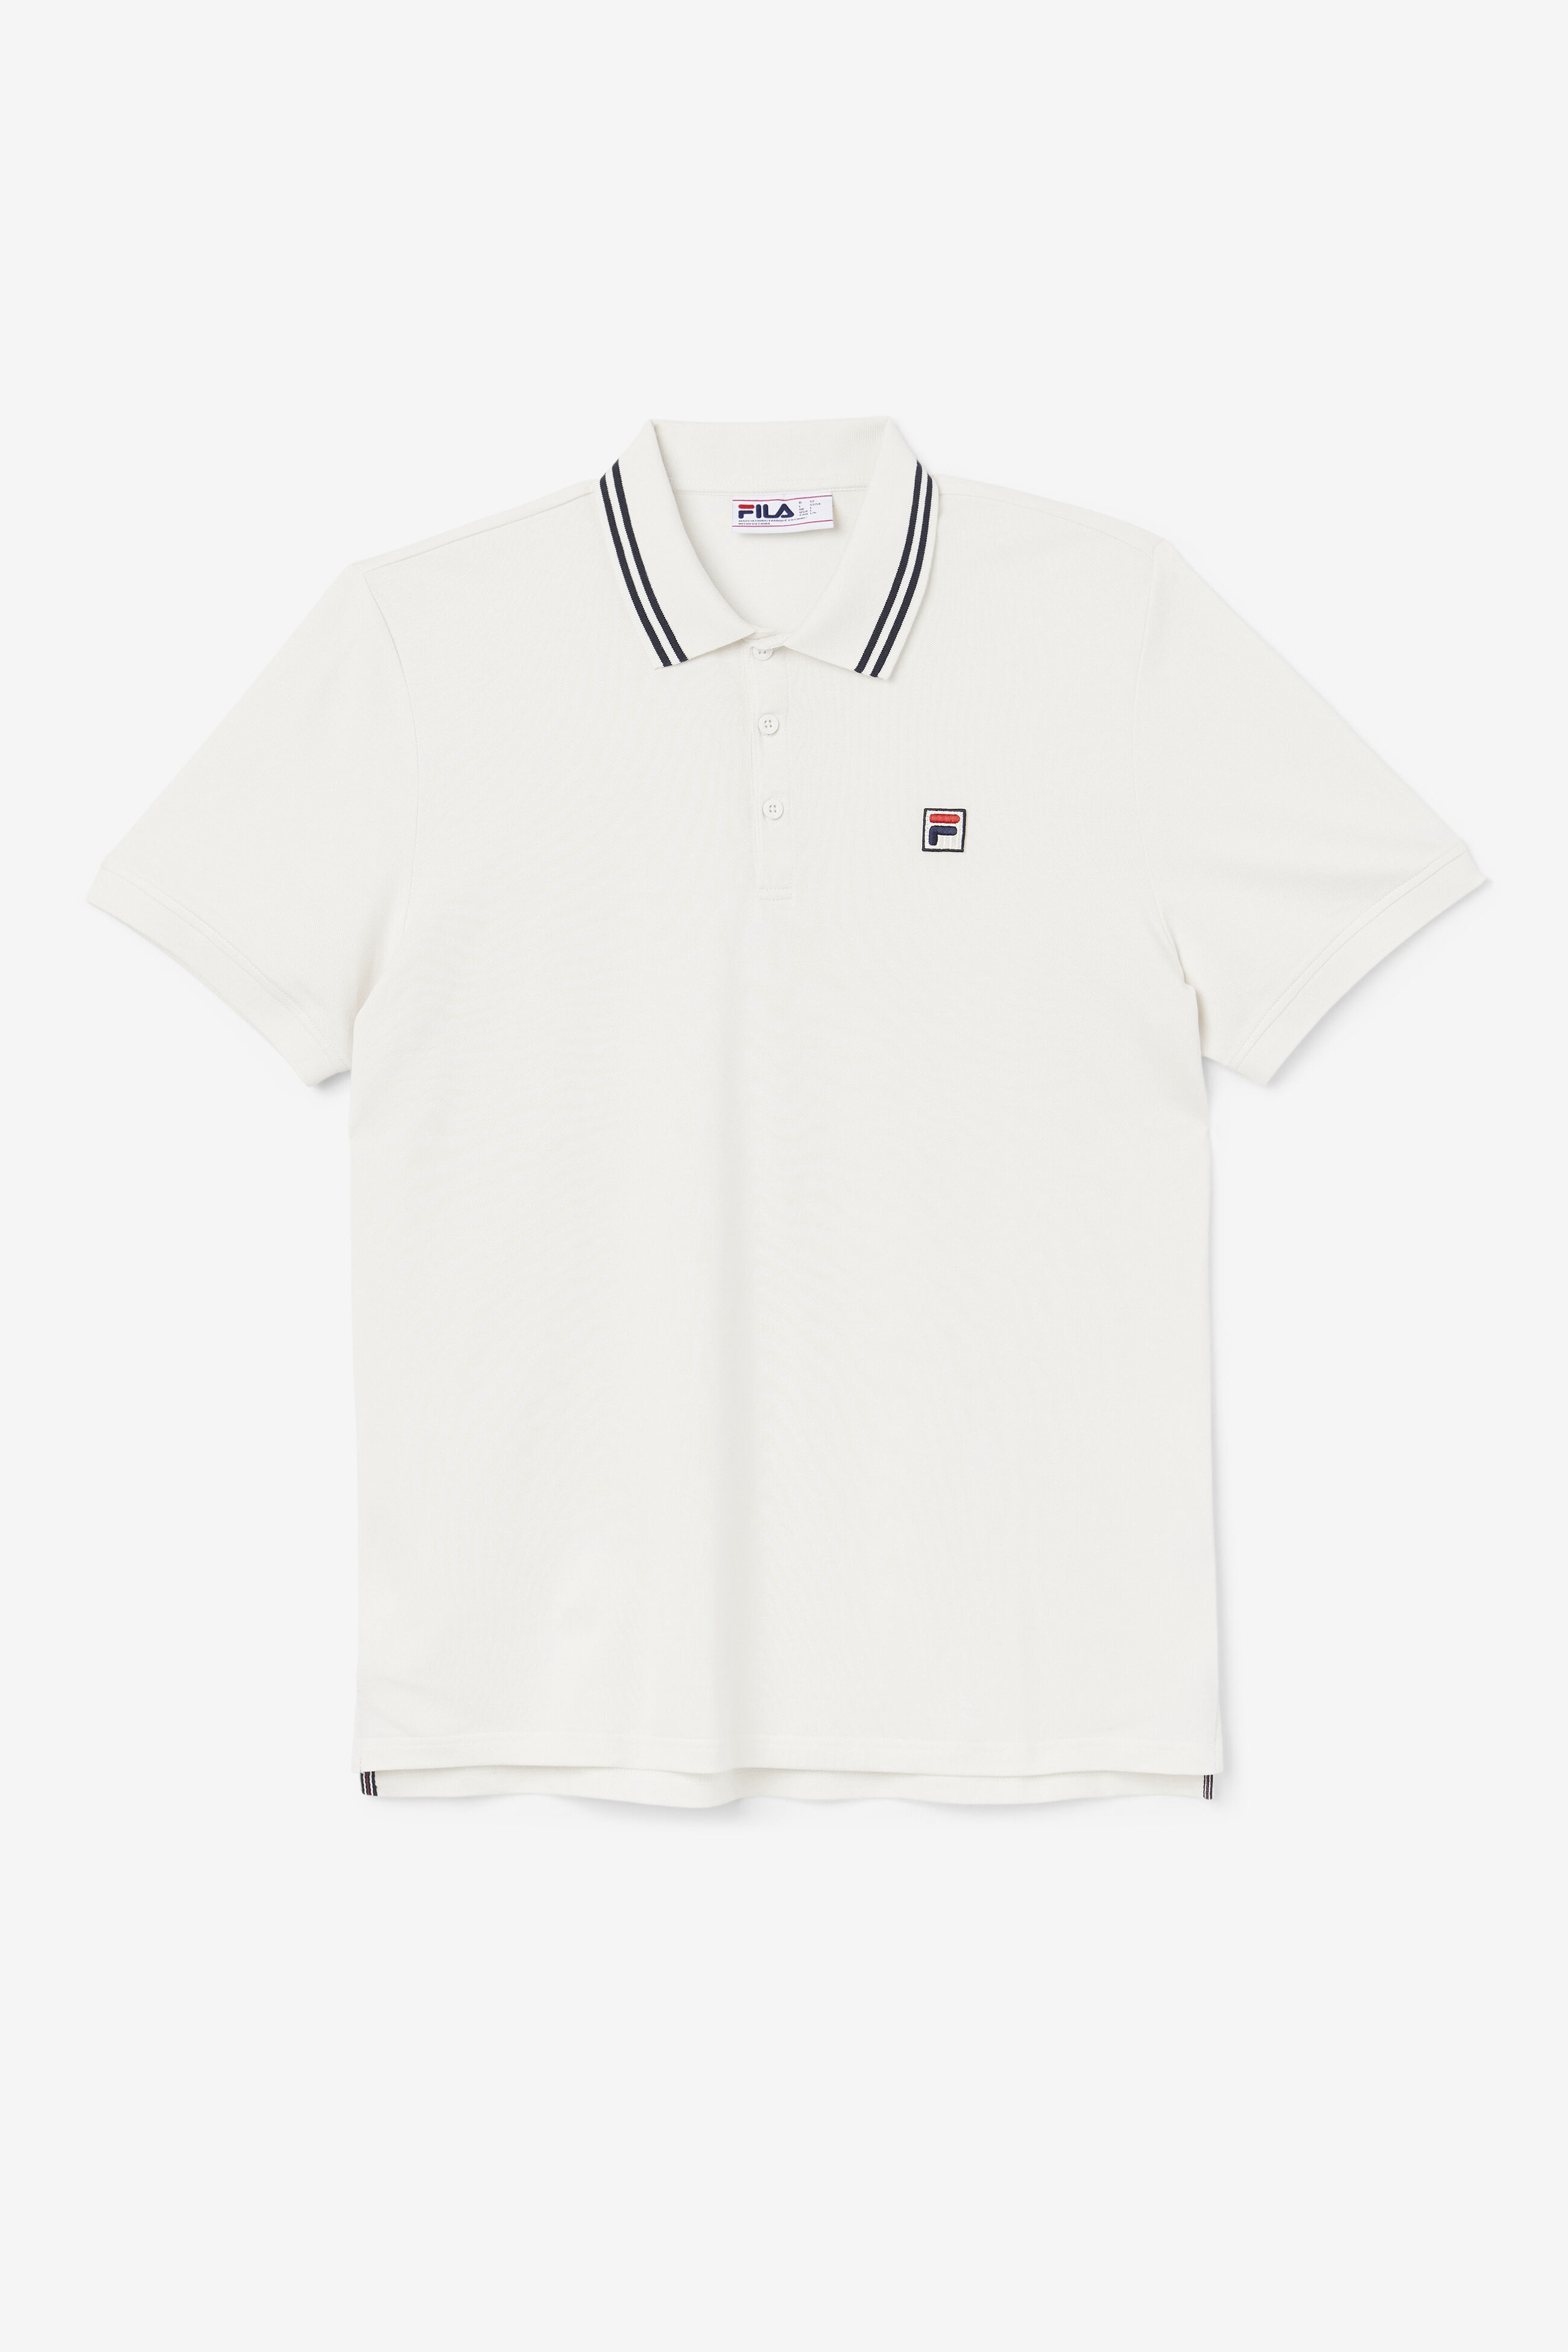 Jelen Polo - Polo & Rugby Shirts | Fila 791273919587